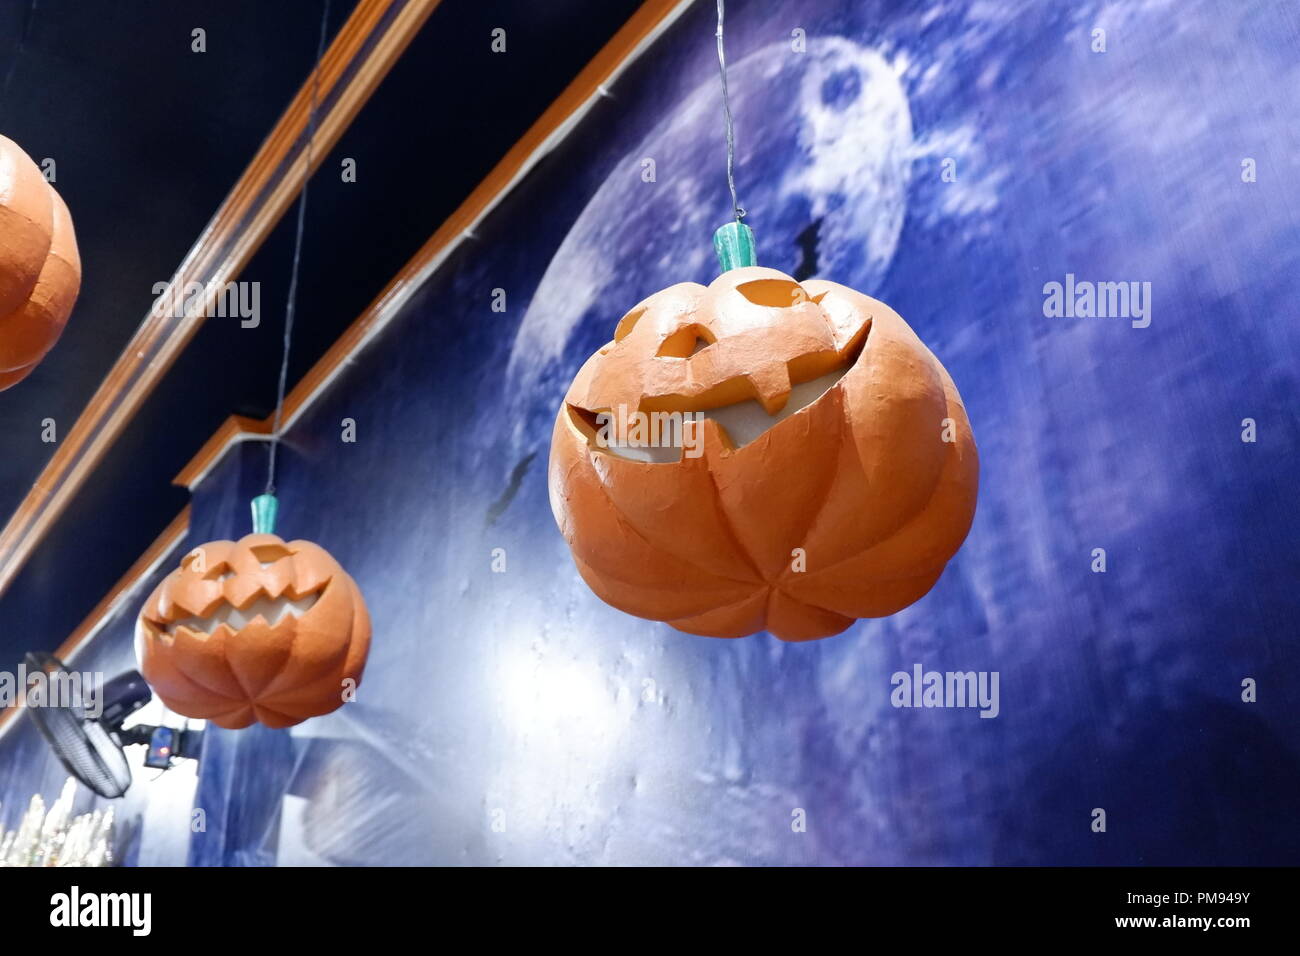 hanging halloween pumpkin Stock Photo